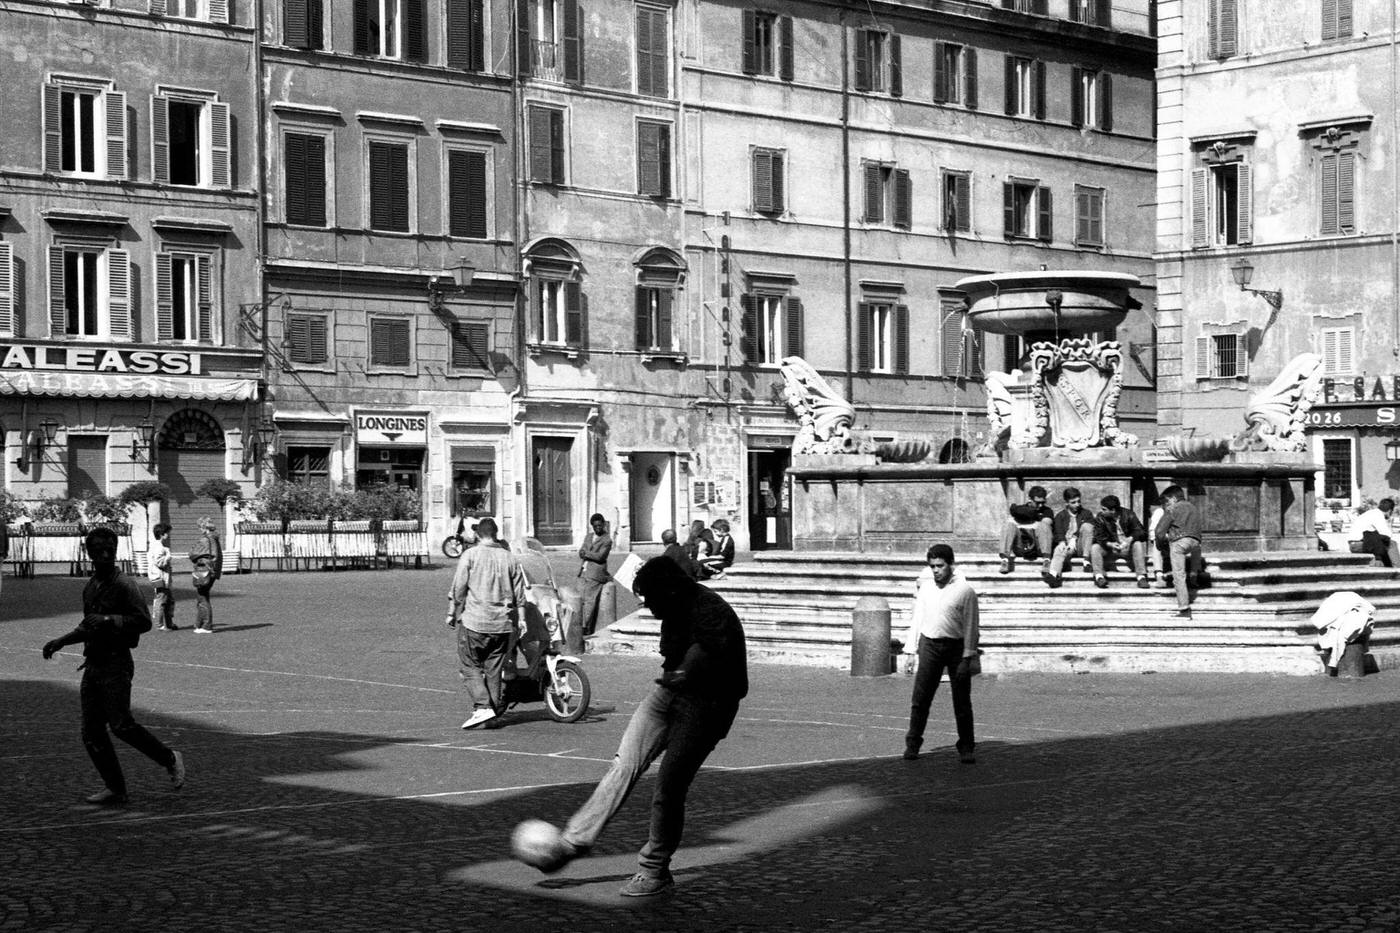 Soccer Play in Piazza di Santa Maria in Trastevere, Rome, 1986